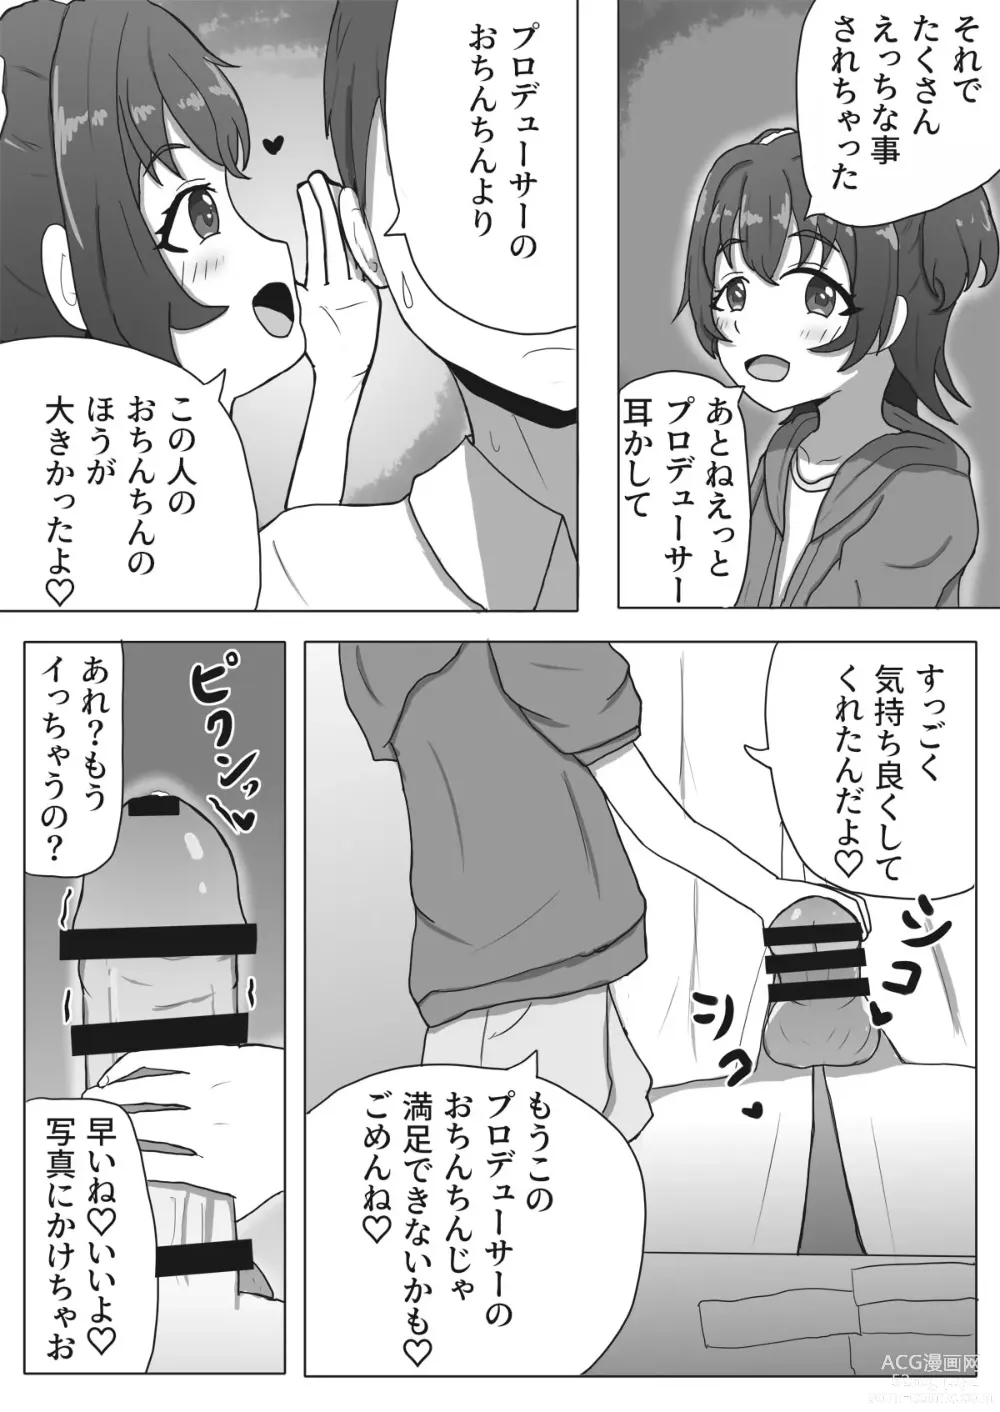 Page 5 of doujinshi Miria-chan NTR Manga